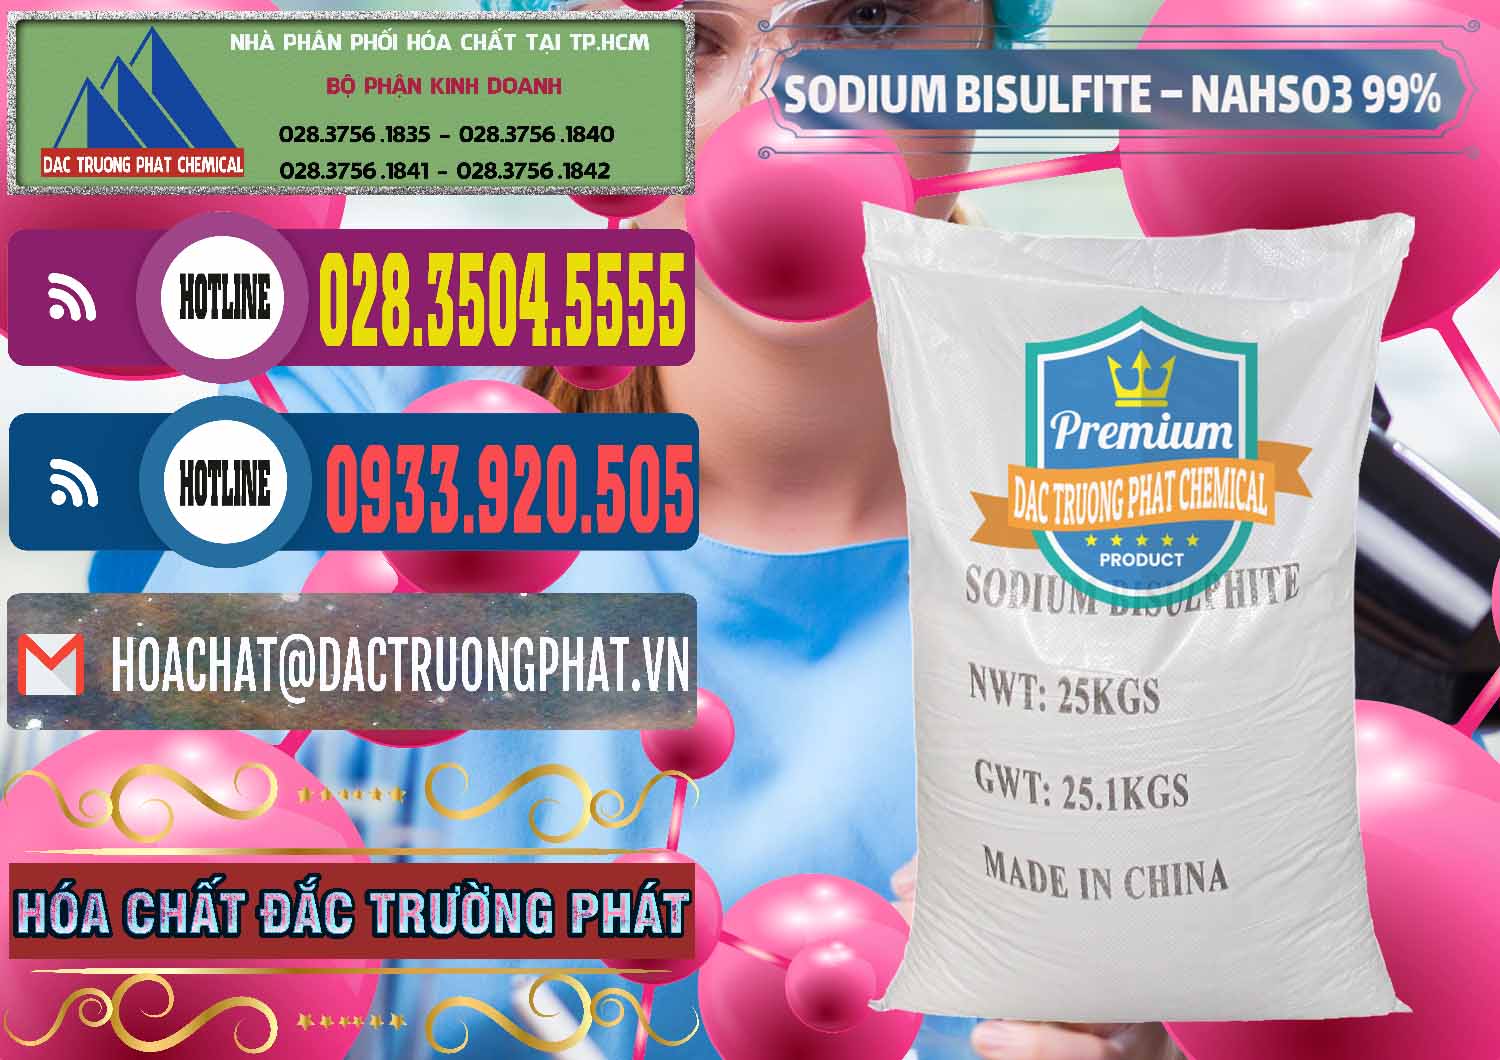 Nơi cung ứng _ bán Sodium Bisulfite – NAHSO3 Trung Quốc China - 0140 - Cty cung cấp _ nhập khẩu hóa chất tại TP.HCM - muabanhoachat.com.vn